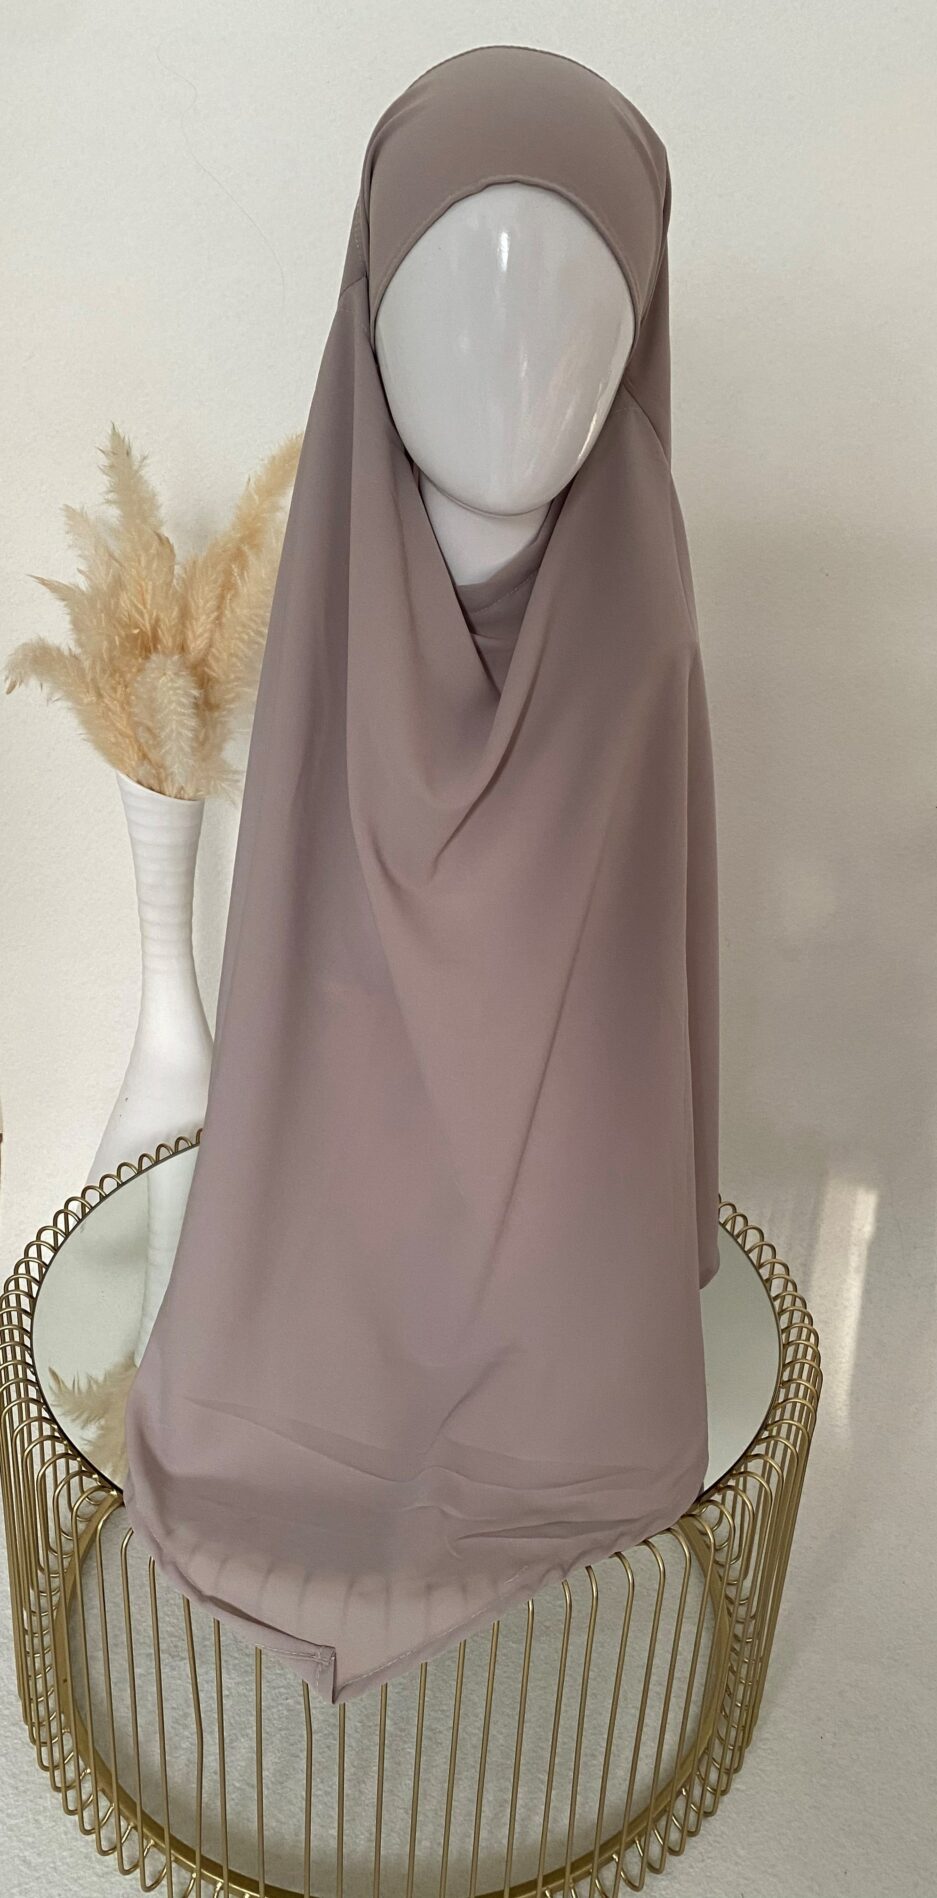 Khimar taupe, long hijab pour la femme musulmane voilée, Cendrijab vend en ligne des khimar de bonne qualité et pas cher, la livraison est rapide , Cendrijab propose un large choix de couleurs, vente de khimar en gros et au détails, notre stock est disponible en France